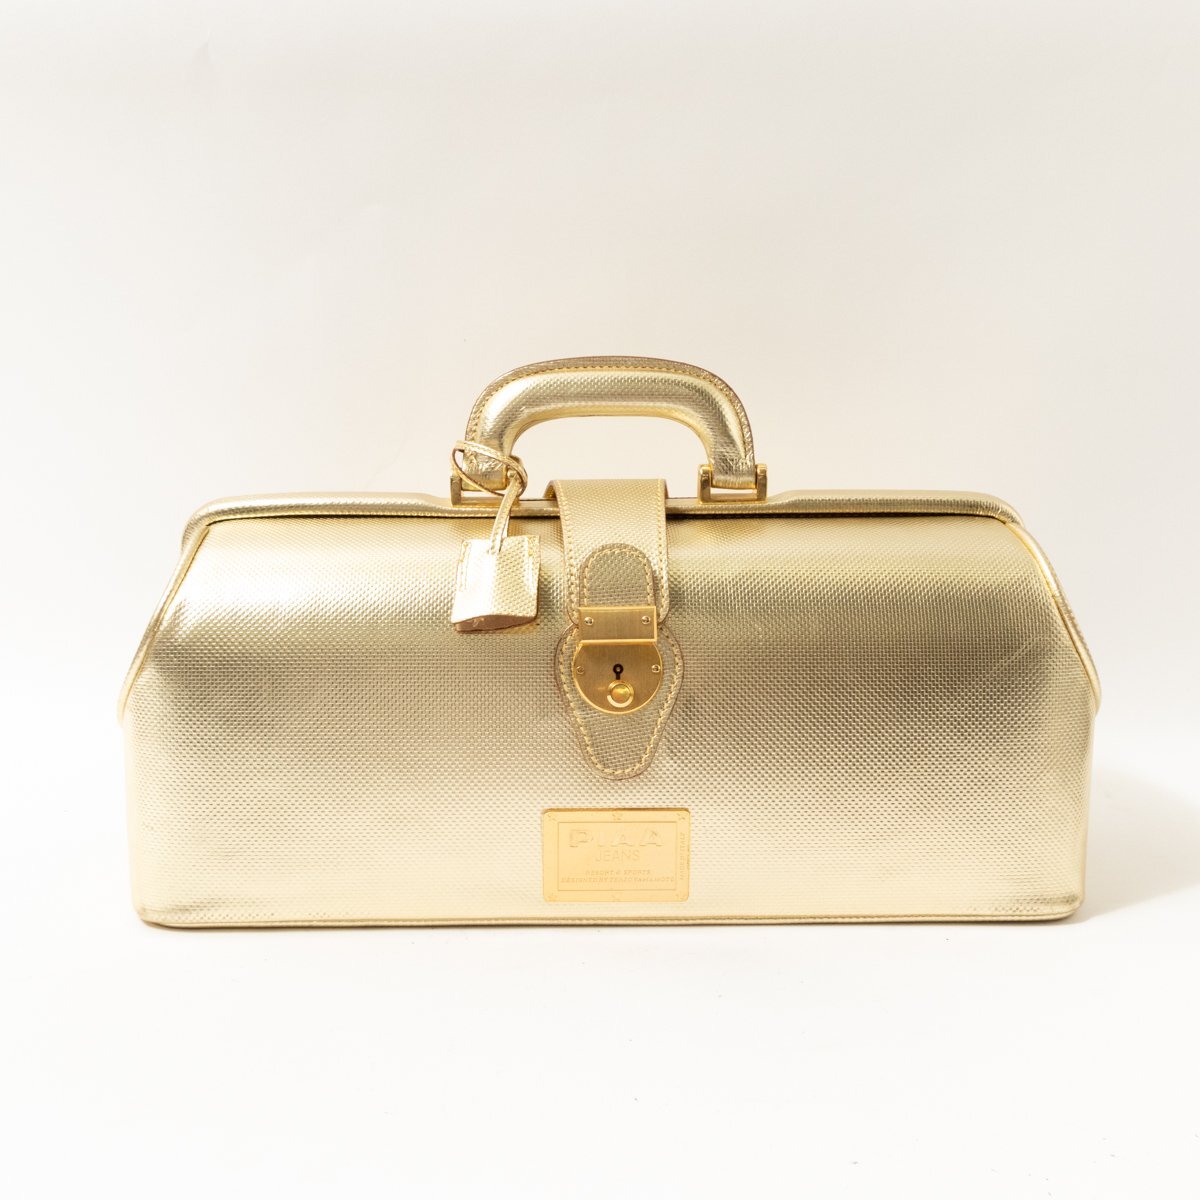 【1円スタート】PIAA JEANS ボストンバッグ ゴールド 金色 レザー 本革 イタリア製 ユニセックス 男女兼用 鍵付き 手さげ bag かばん 鞄の画像1